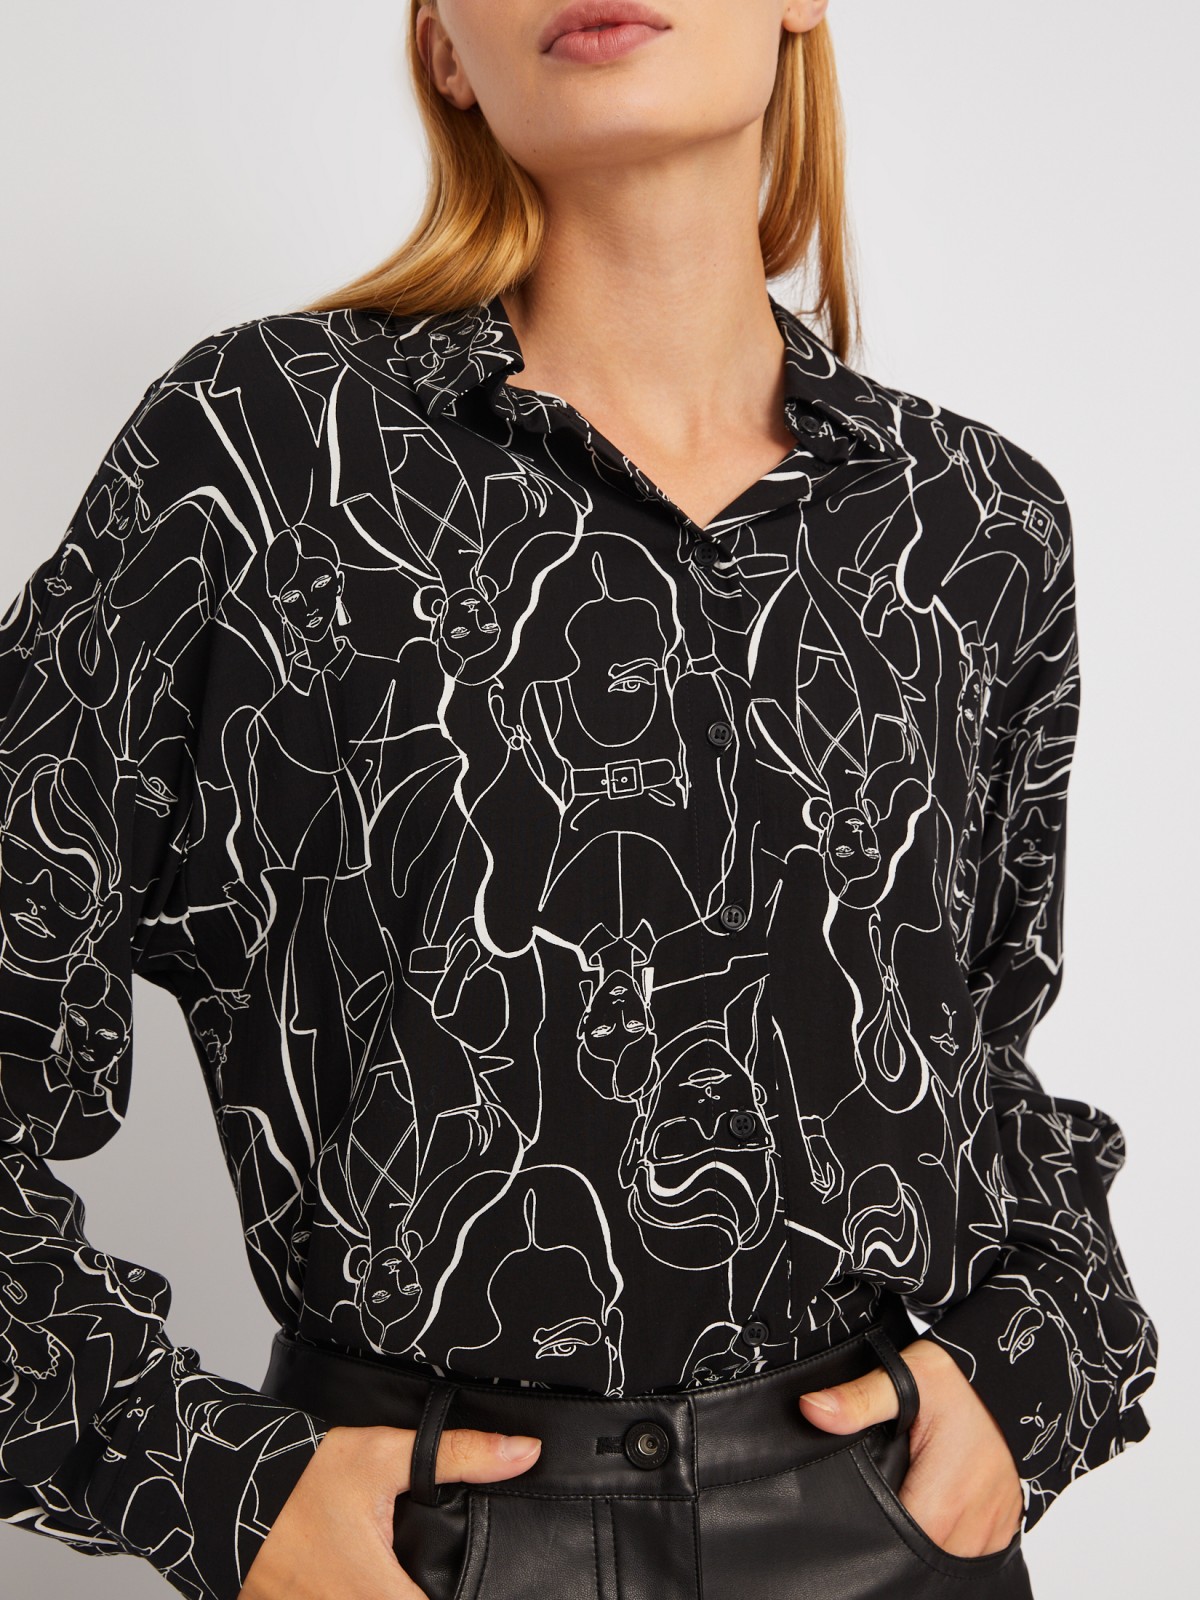 Рубашка оверсайз силуэта из вискозы с принтом zolla 024111162383, цвет черный, размер XS - фото 4